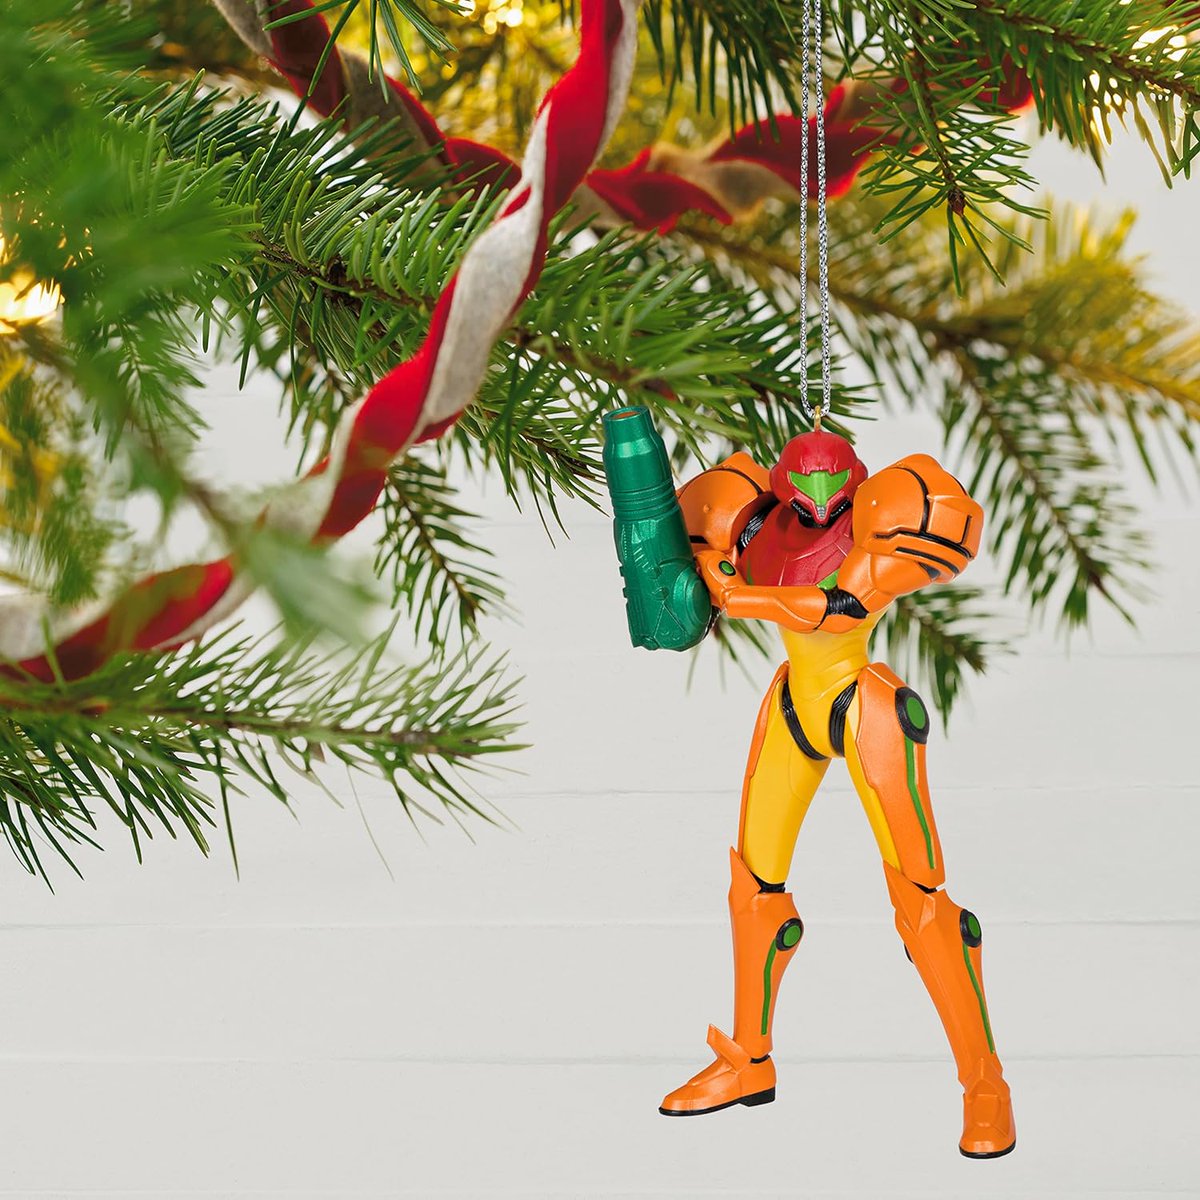 サムス・アラン 「Samus Christmas tree ornament (Metroid) 」|THE ART OF VIDEO GAMESのイラスト